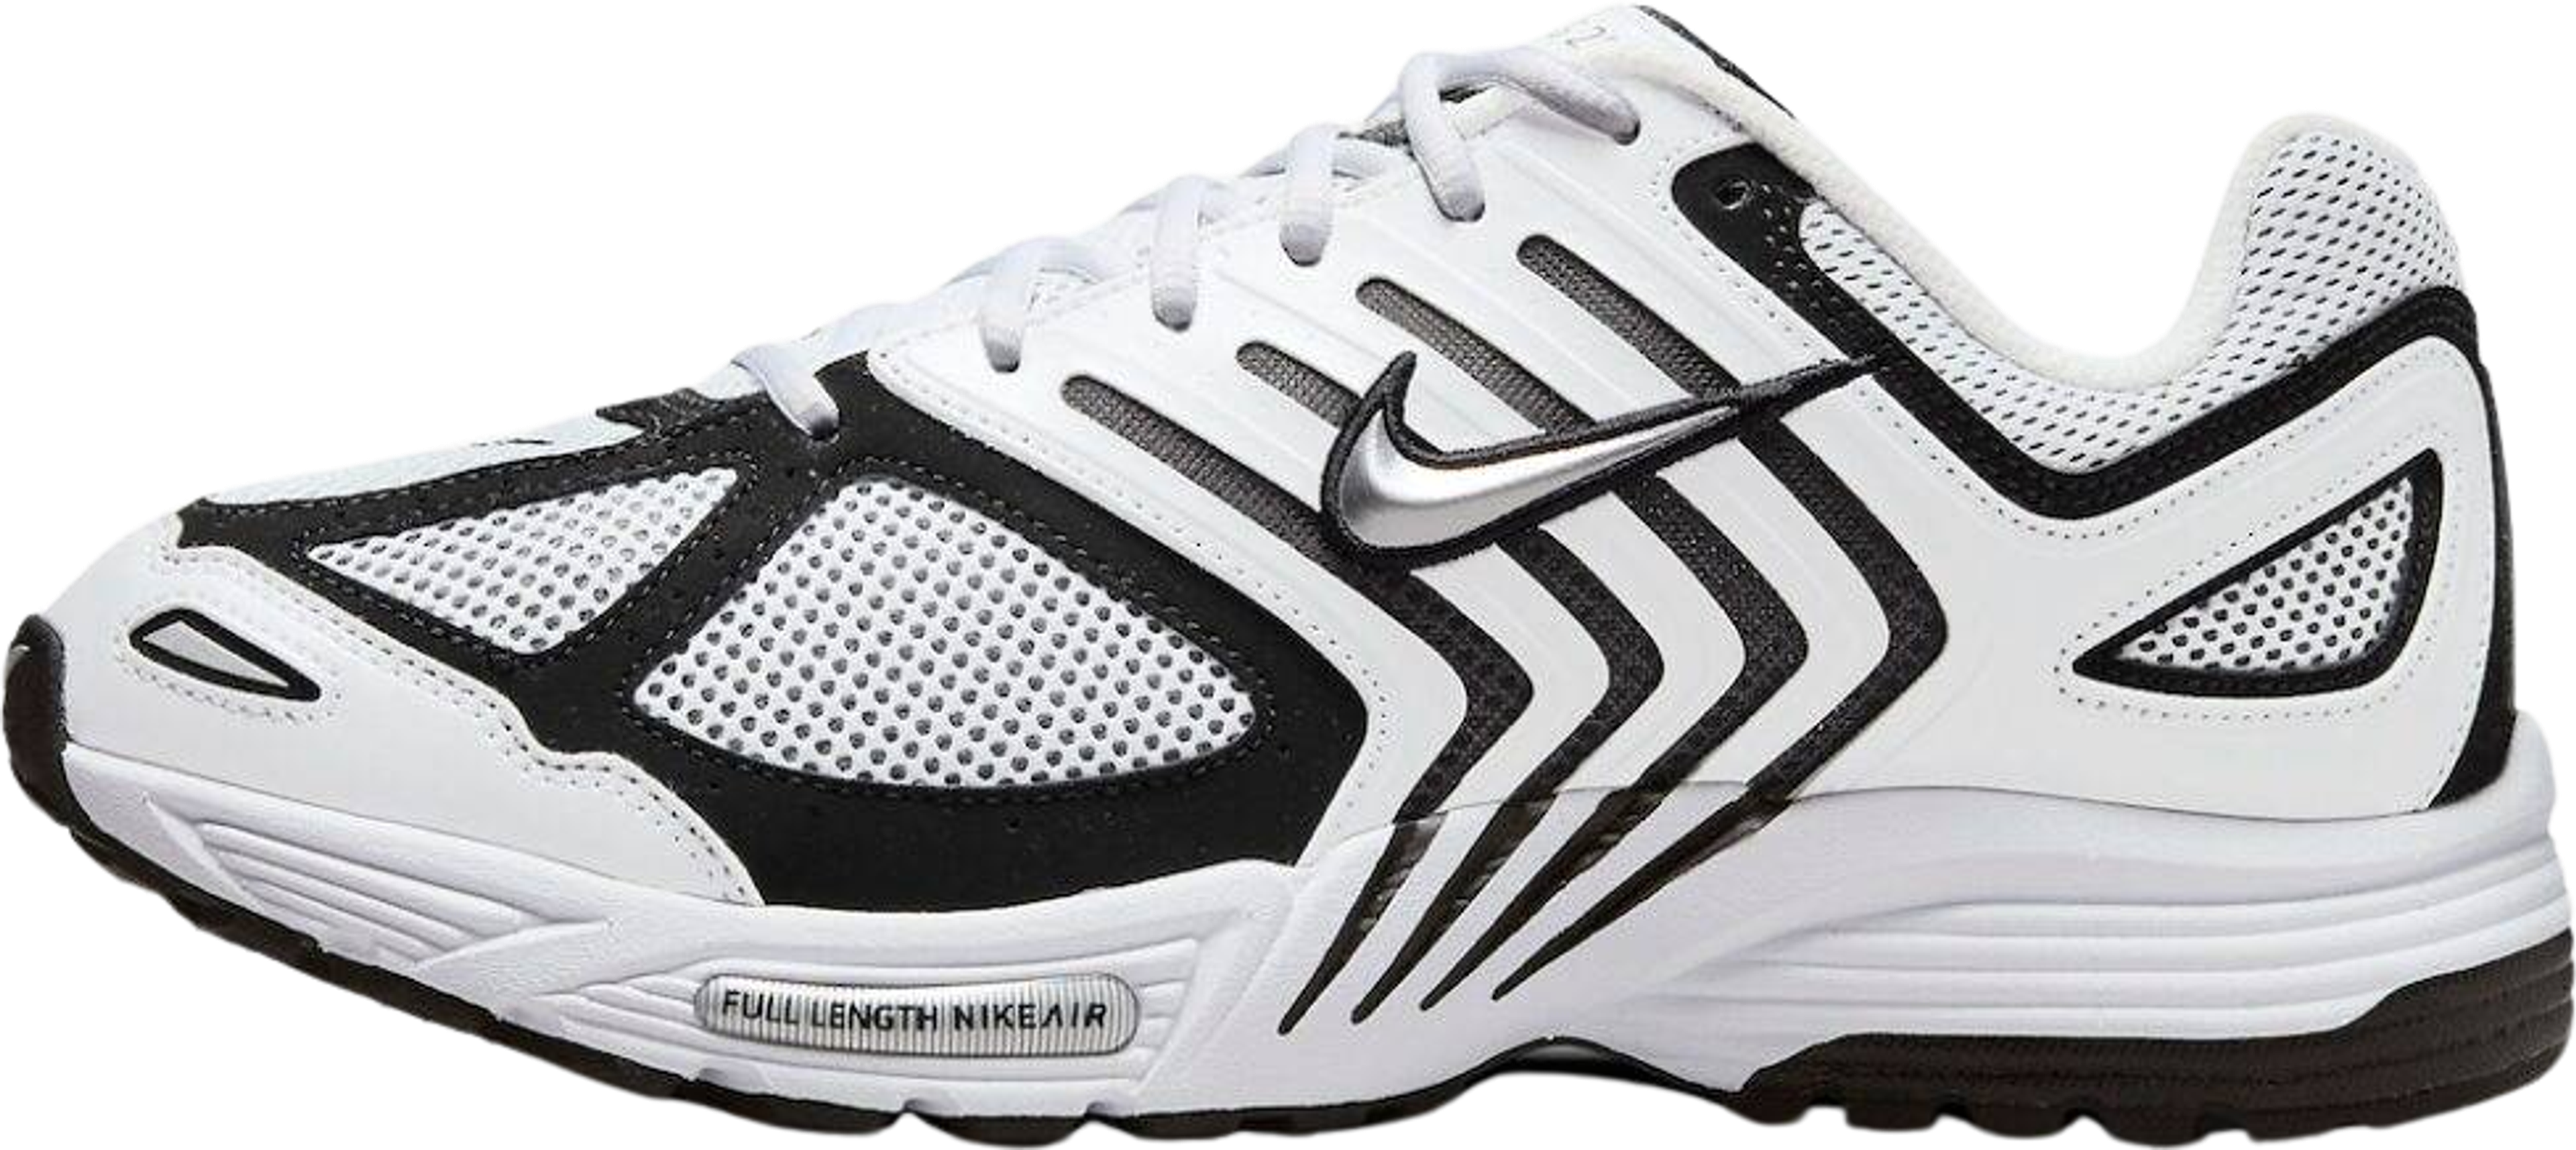 Nike Air Pegasus 2K5 White/Black | Release Information